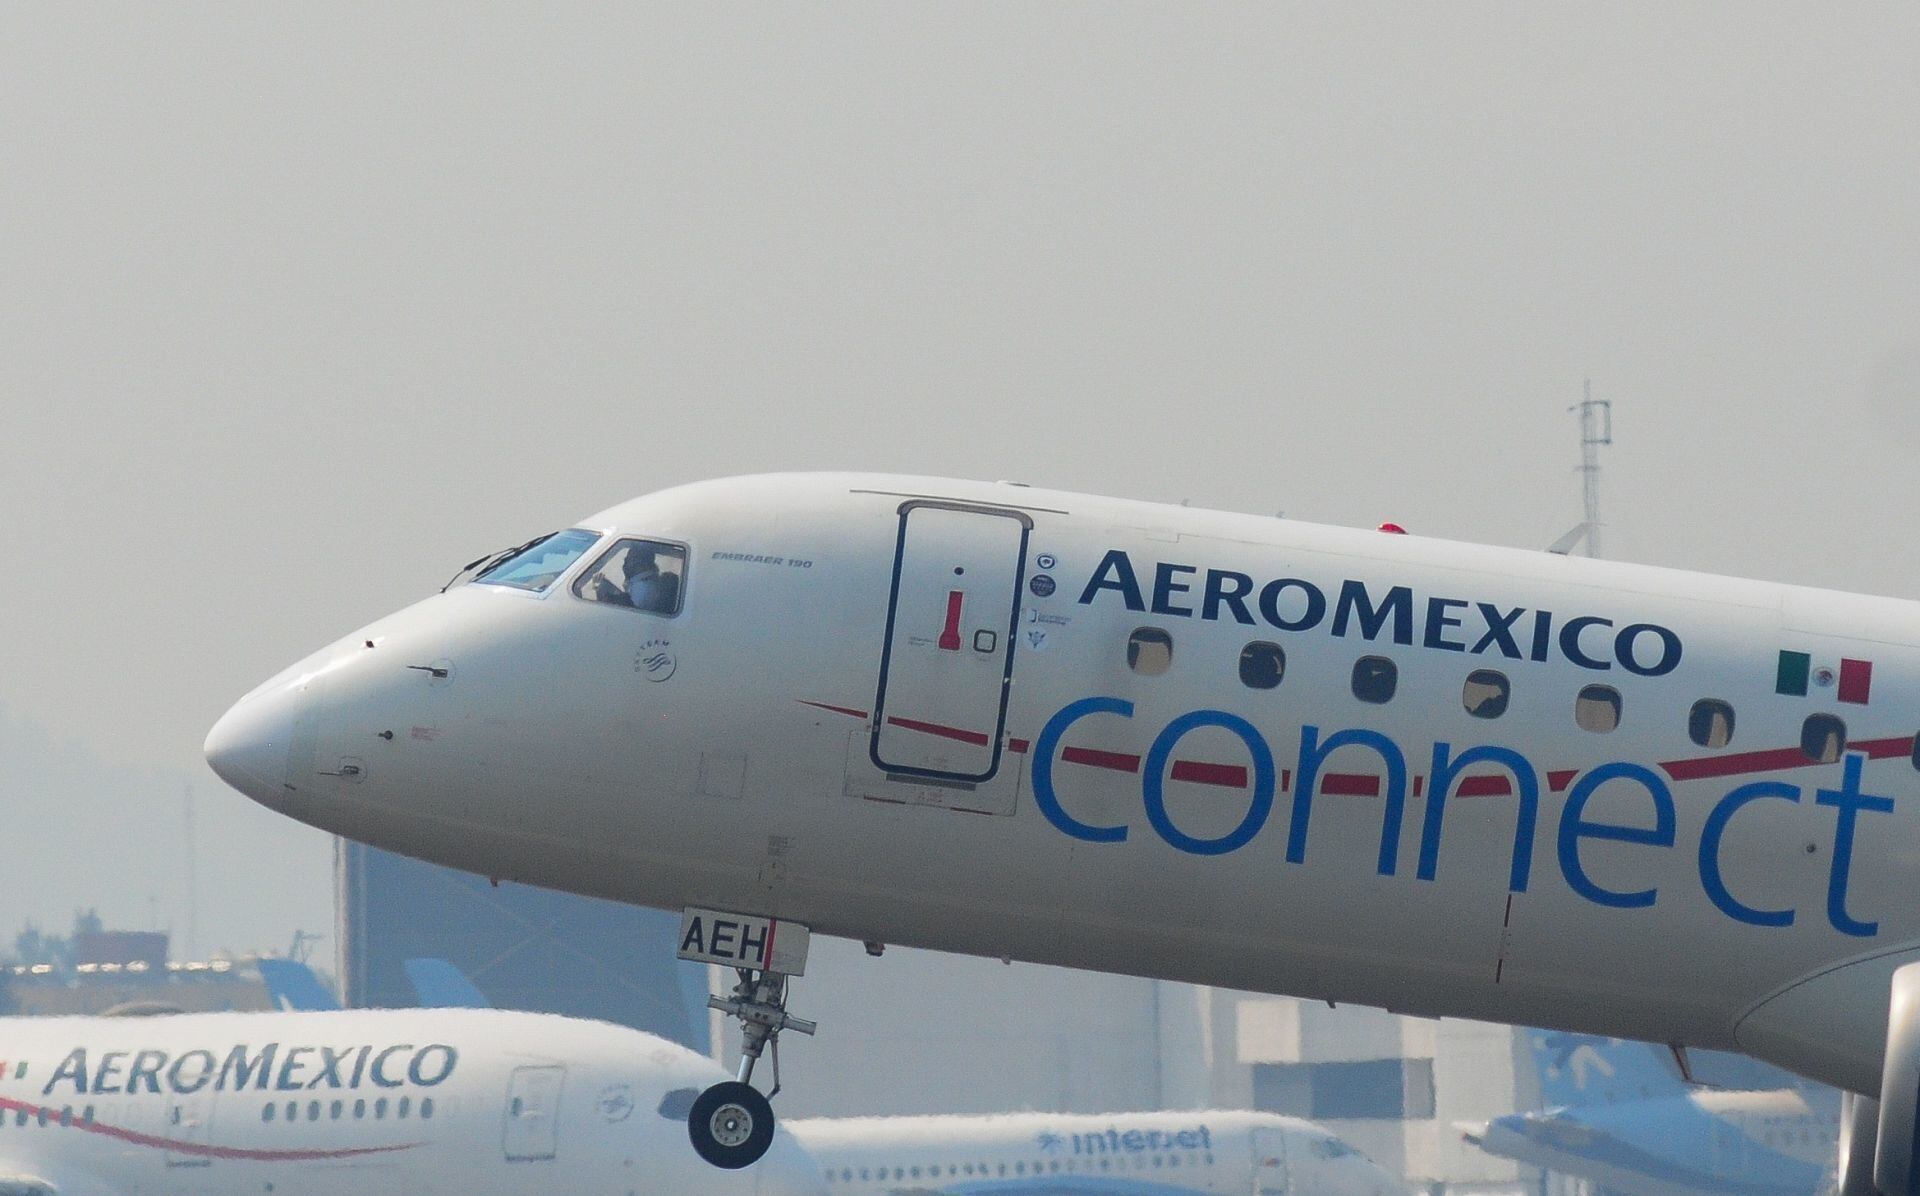 Aeroméxico pondrá en tierra 19 aeronaves MAX-9 tras incidente de Alaska Airlines